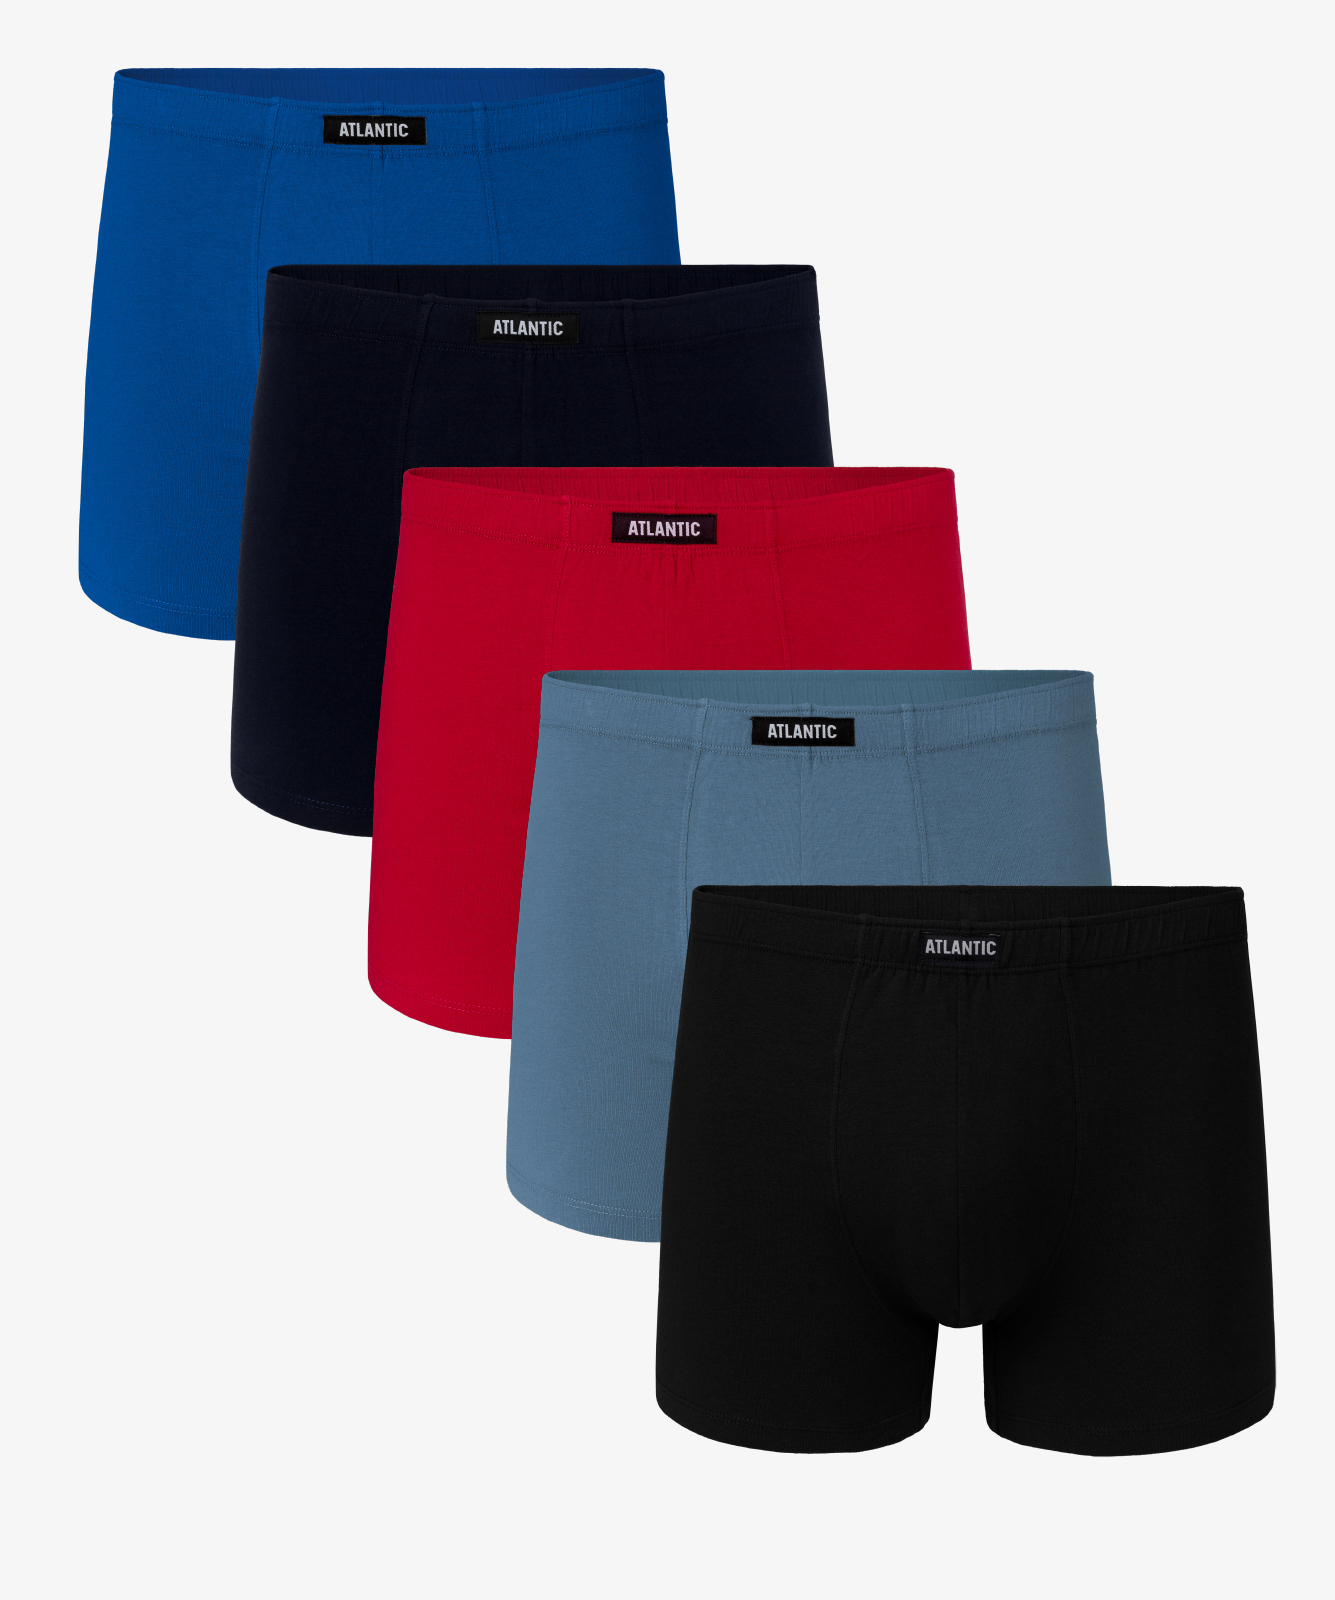 Мужские трусы шорты Atlantic, набор из 5 шт., хлопок, голубые + темно-синие + красные + черные, 5SMH-002